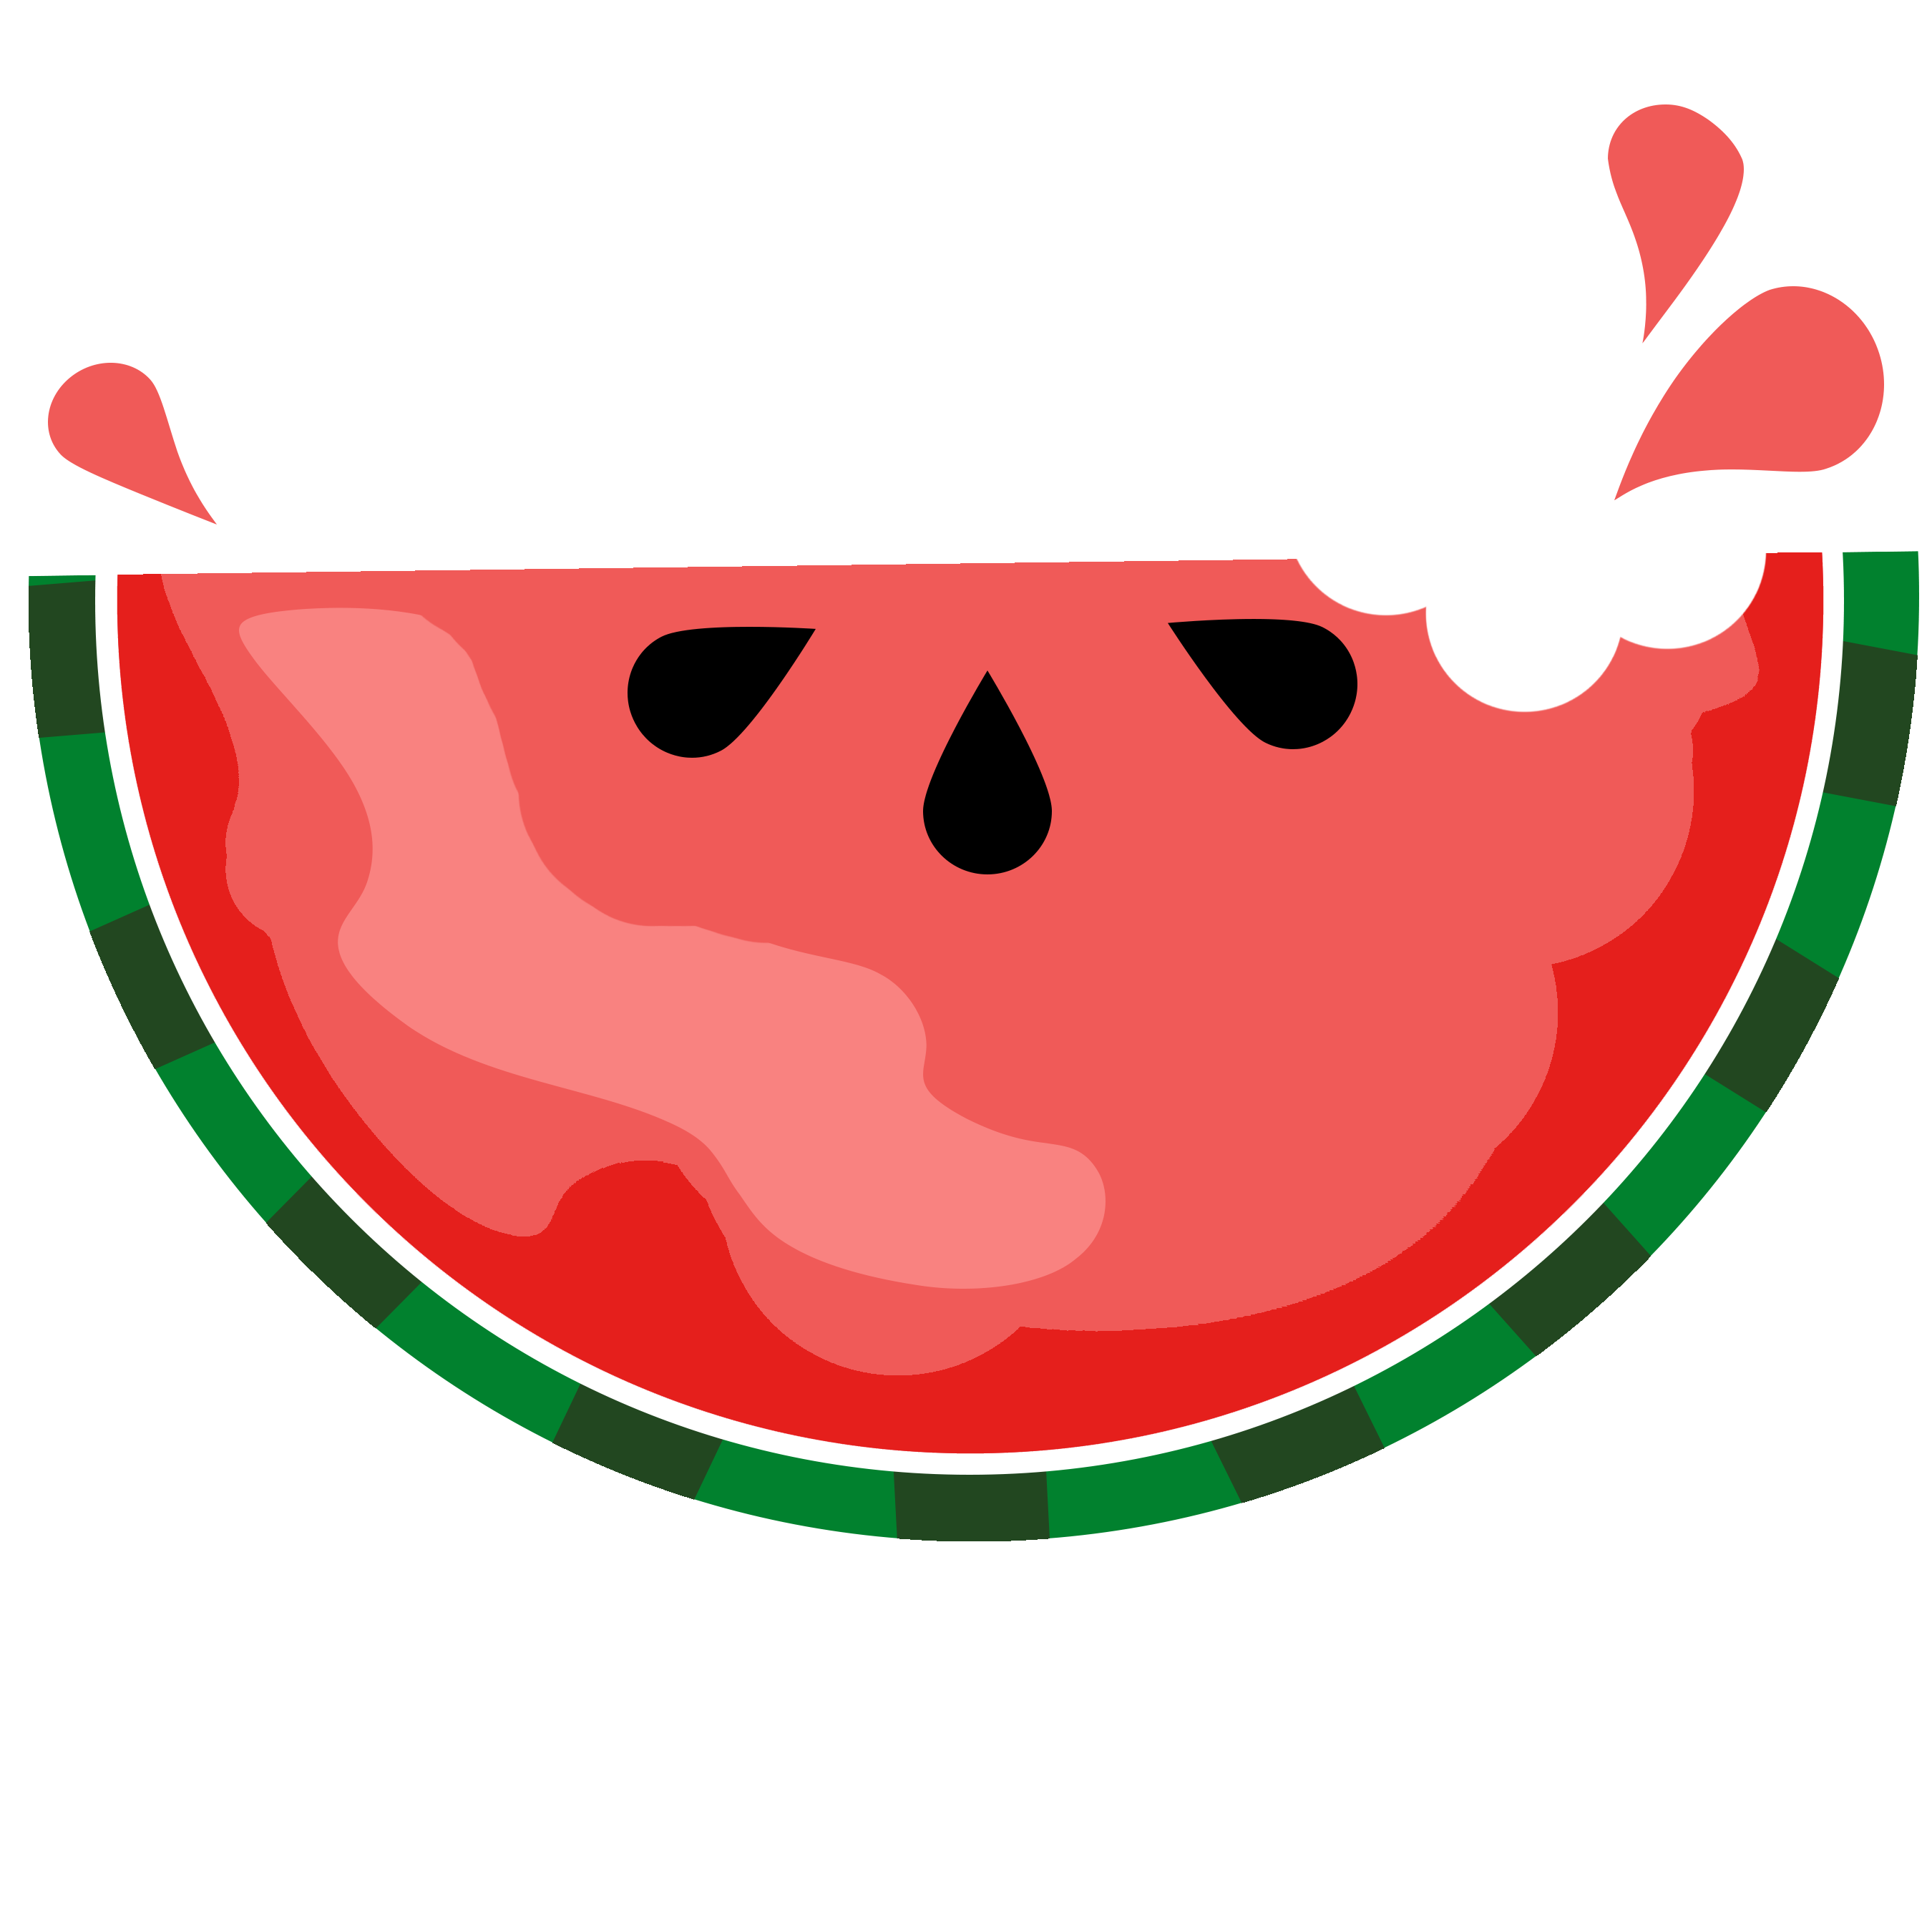 Watermelon clipart free clip 